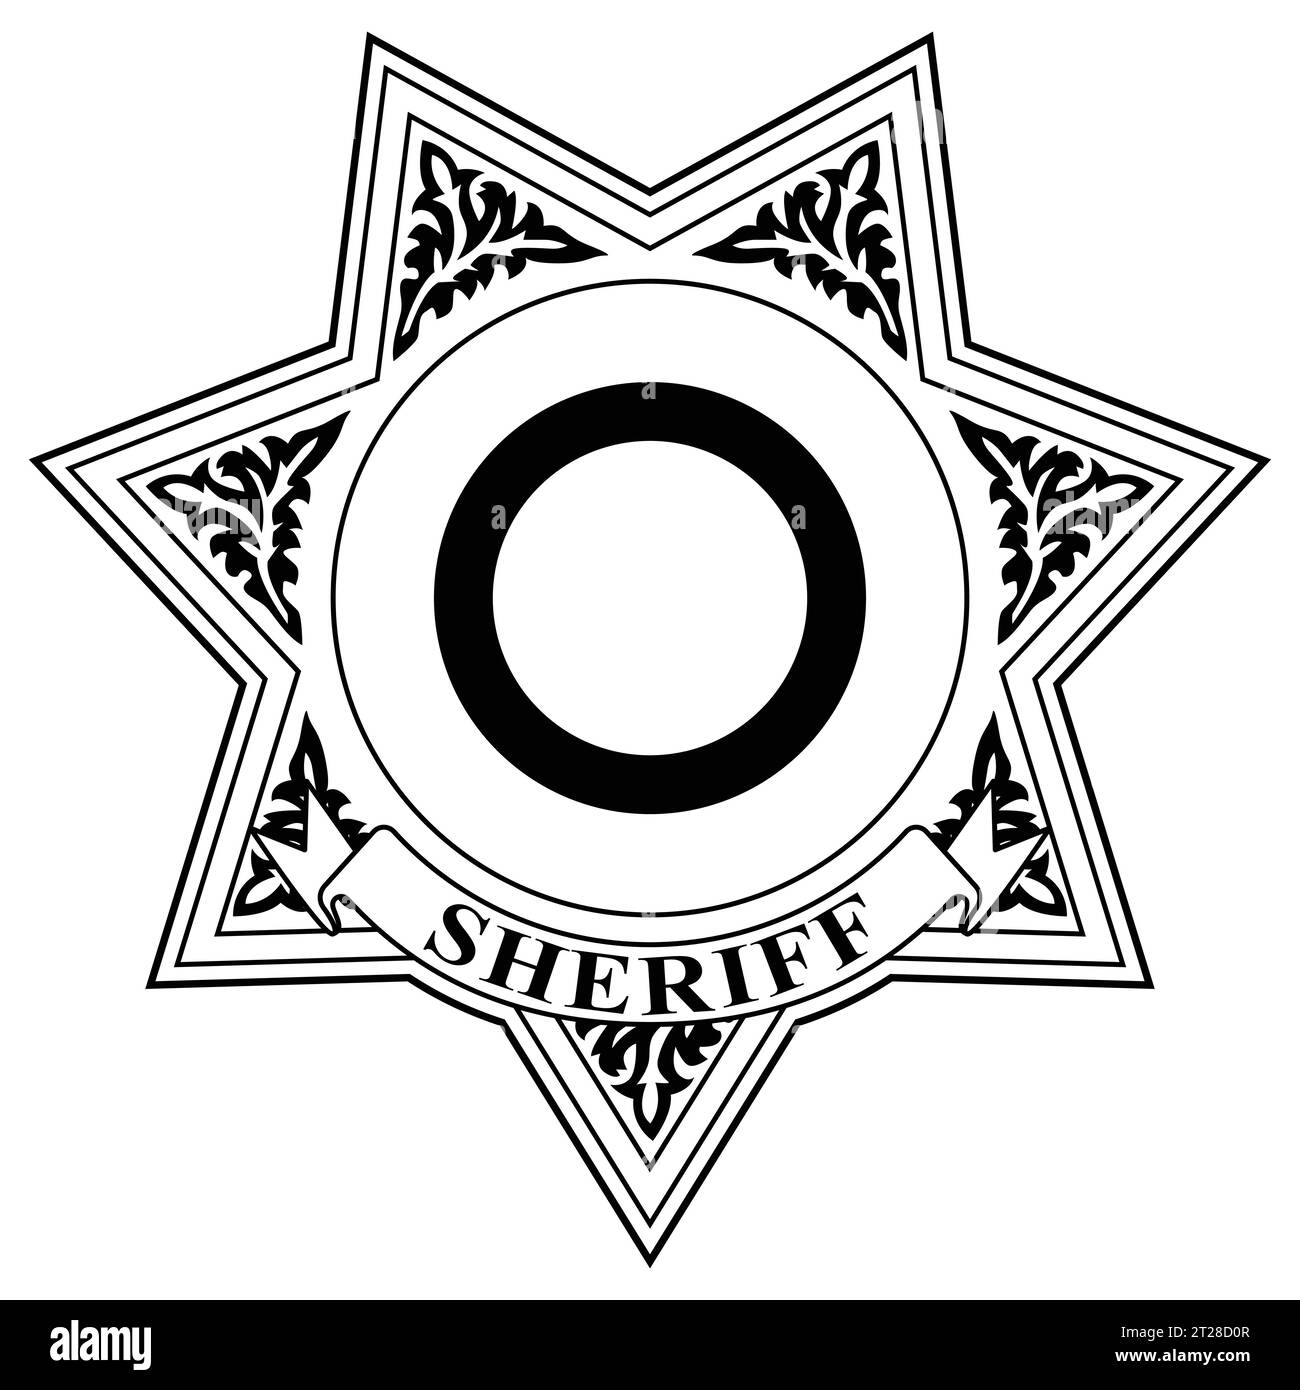 Una linda gorra de policía con un símbolo de sheriff dorado y una estrella  ilustración vectorial en dibujos animados